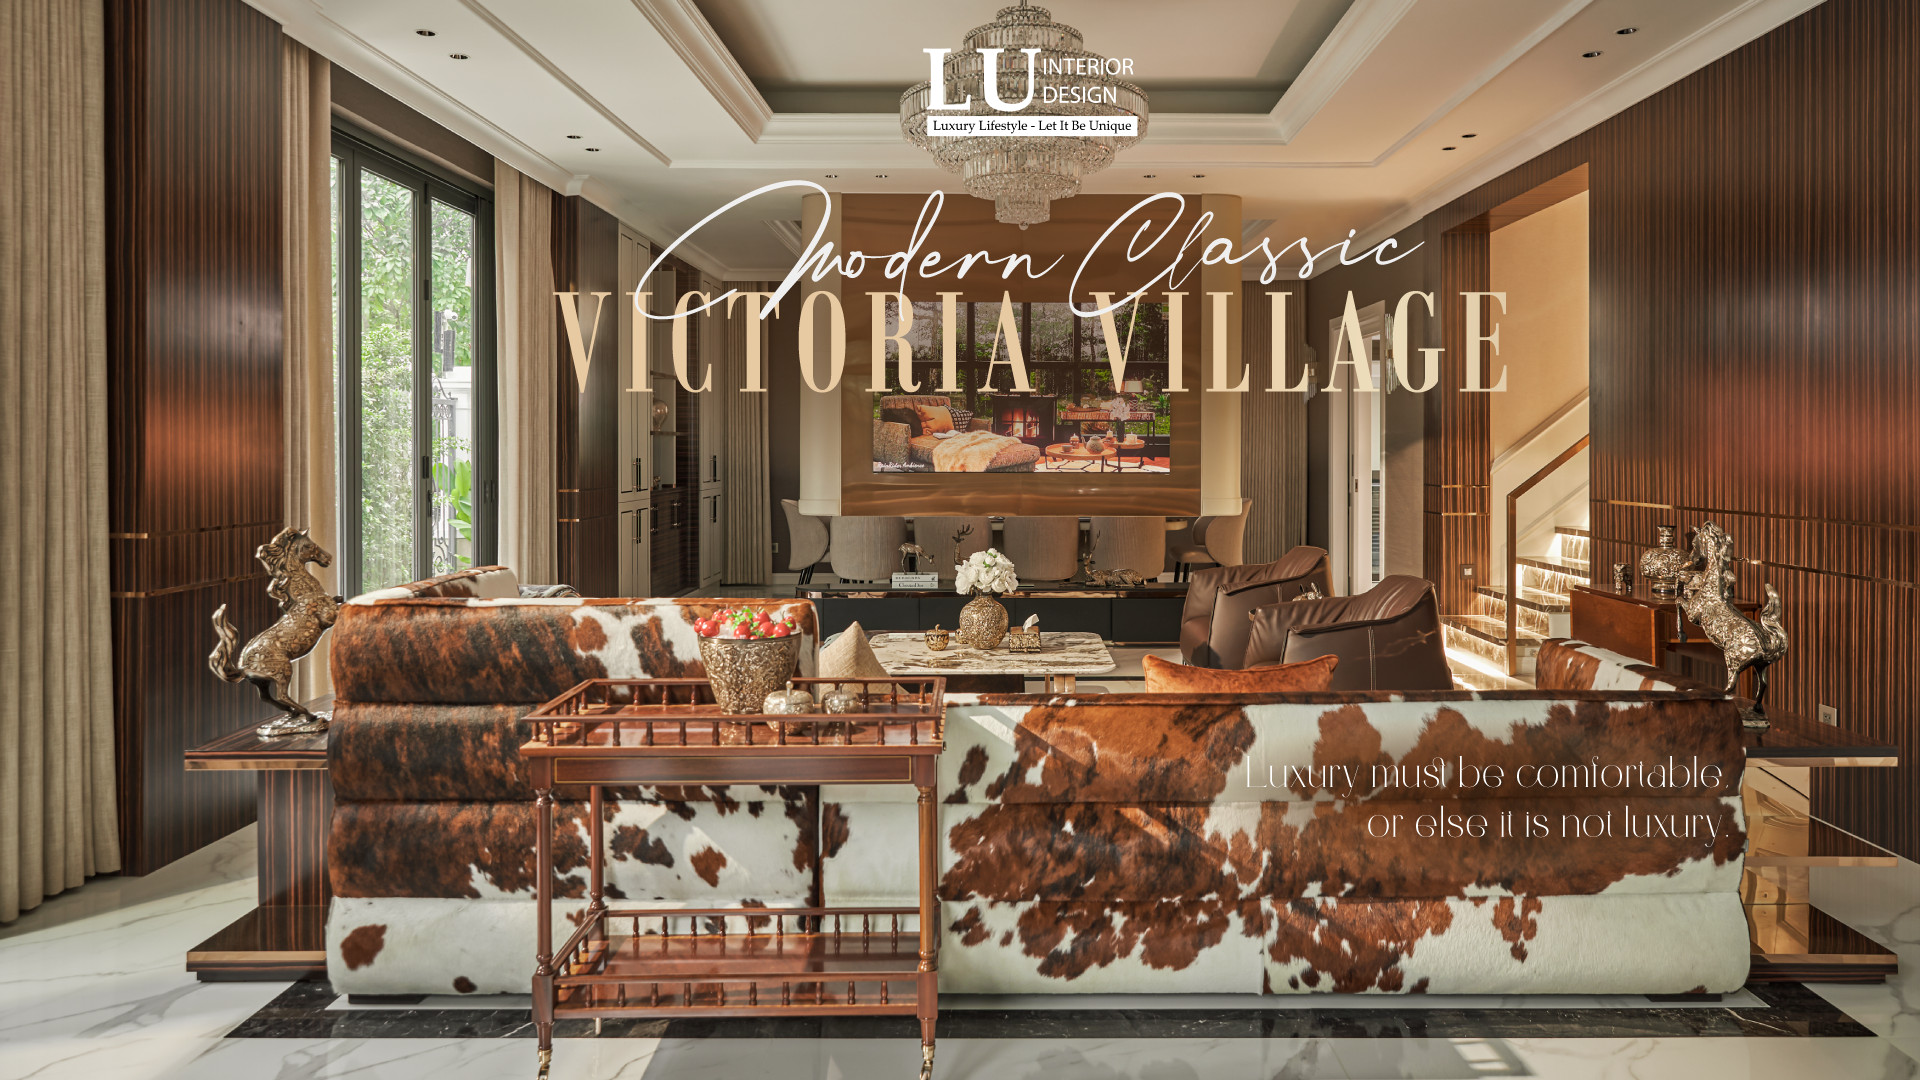 Phong cách thiết kế modern classic dần trở thành xu hướng | Dự án Victoria Village - LU Design